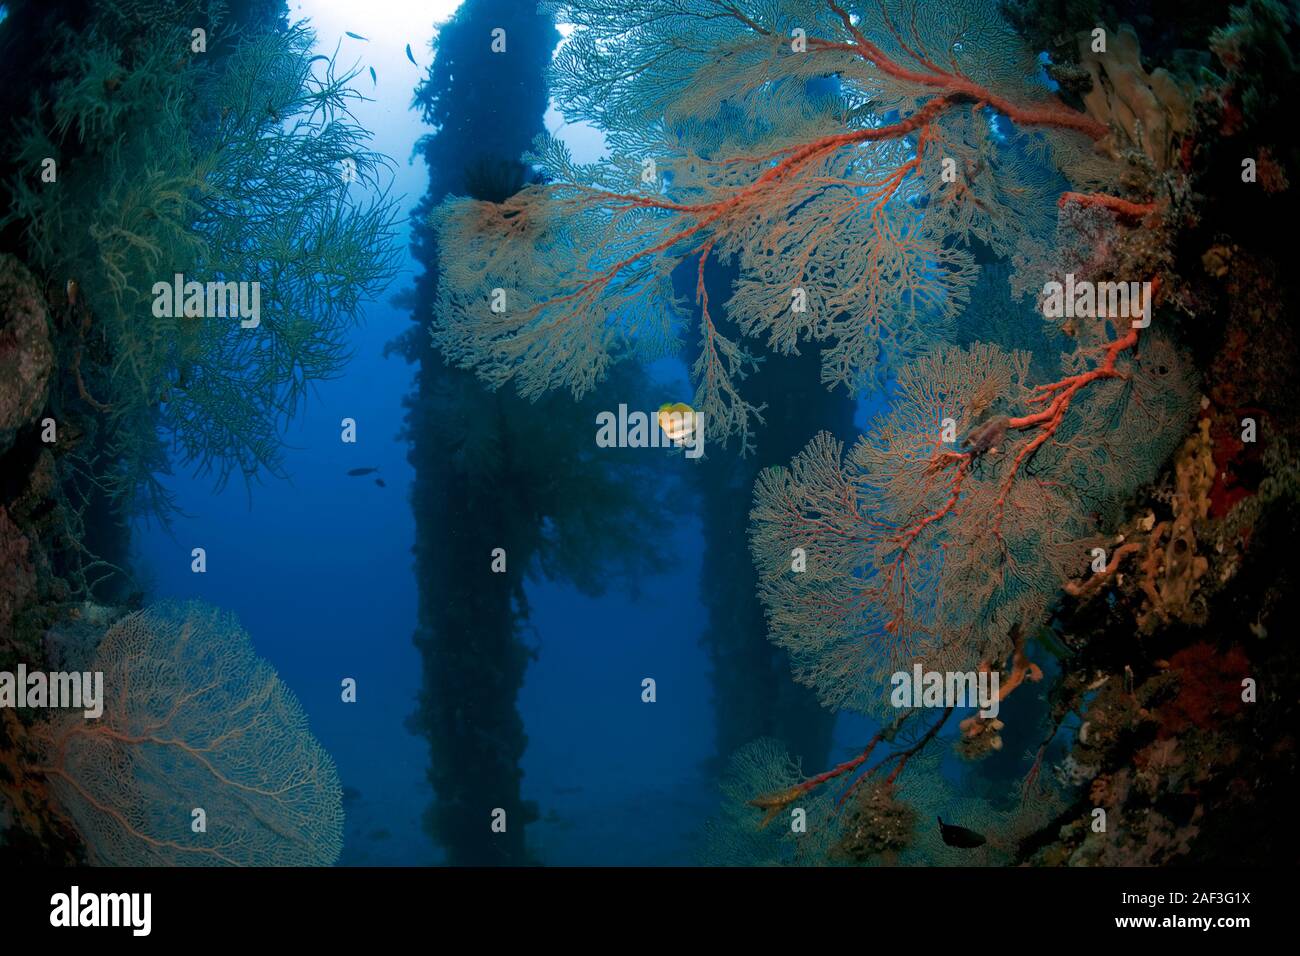 Taucher betrachtet bunt bewachsene Stützpfeiler unter dem Ducomi Pier, Bacong, Dumaguete, Negros, Philippinen | Scuba diver at pillars overgrown with Stock Photo